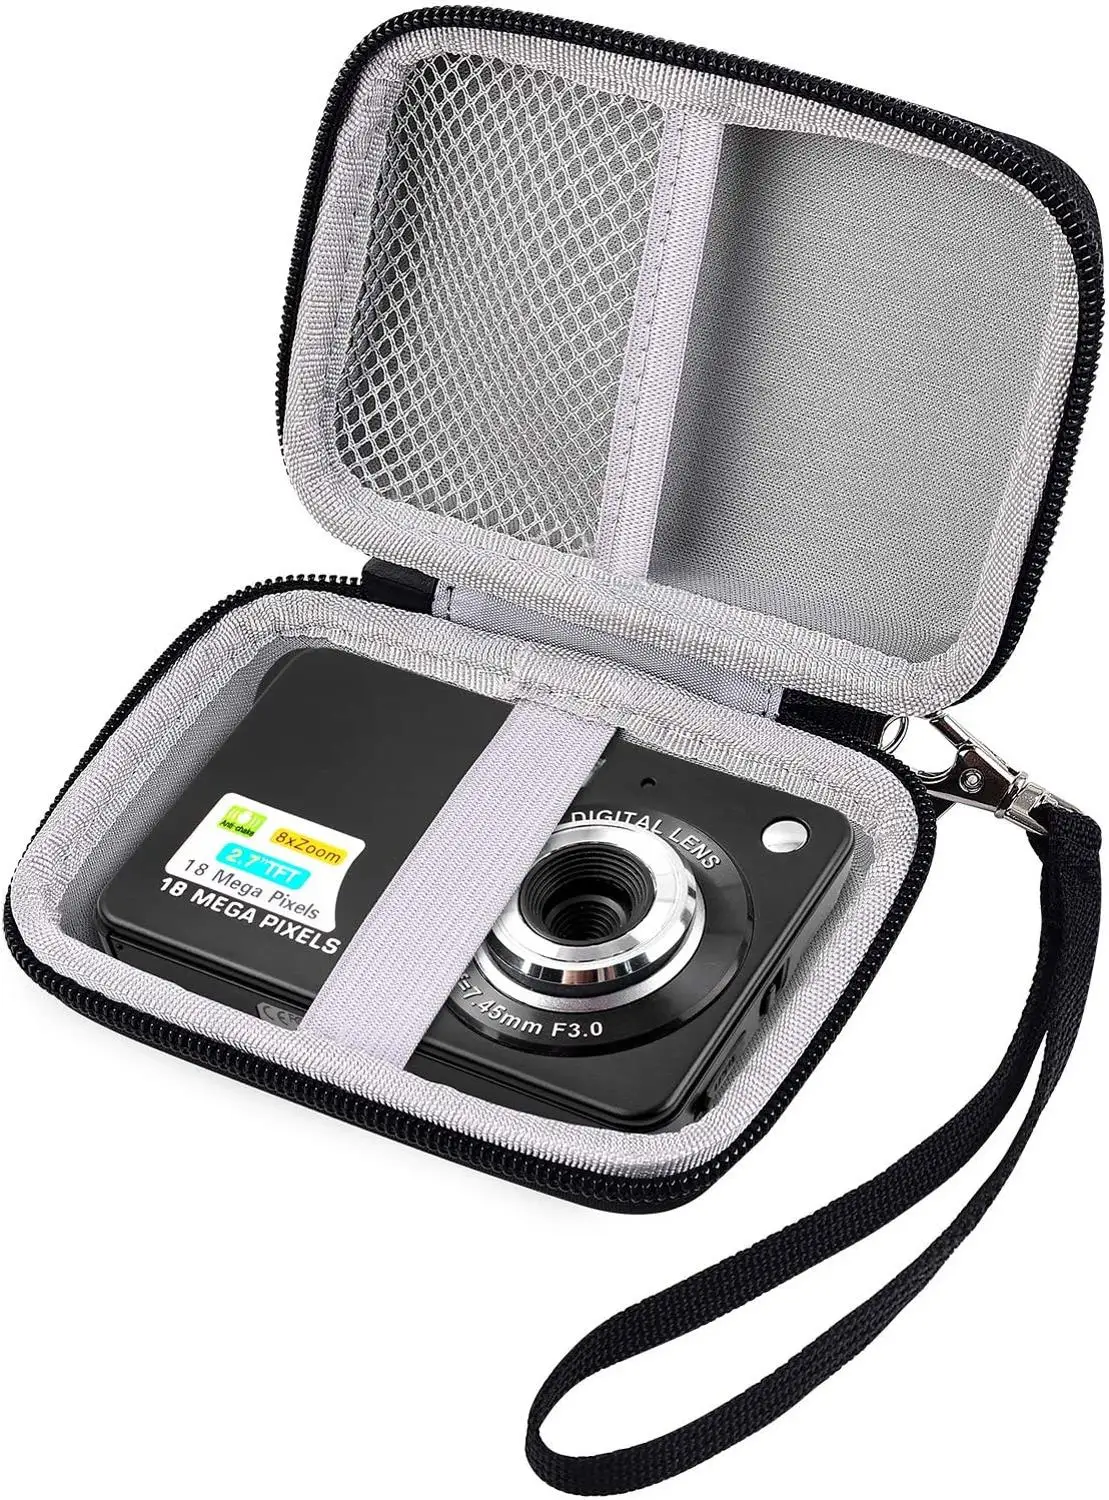 Étui pour appareil photo numérique AbergBest 21 mégapixels LCD 2,7 rechargeable HD/Kodak Pixpro/Canon PowerShot ELPH 180 190/Sony DSCW800/DSCW830 petite boîte de rangement de voyage uniquement